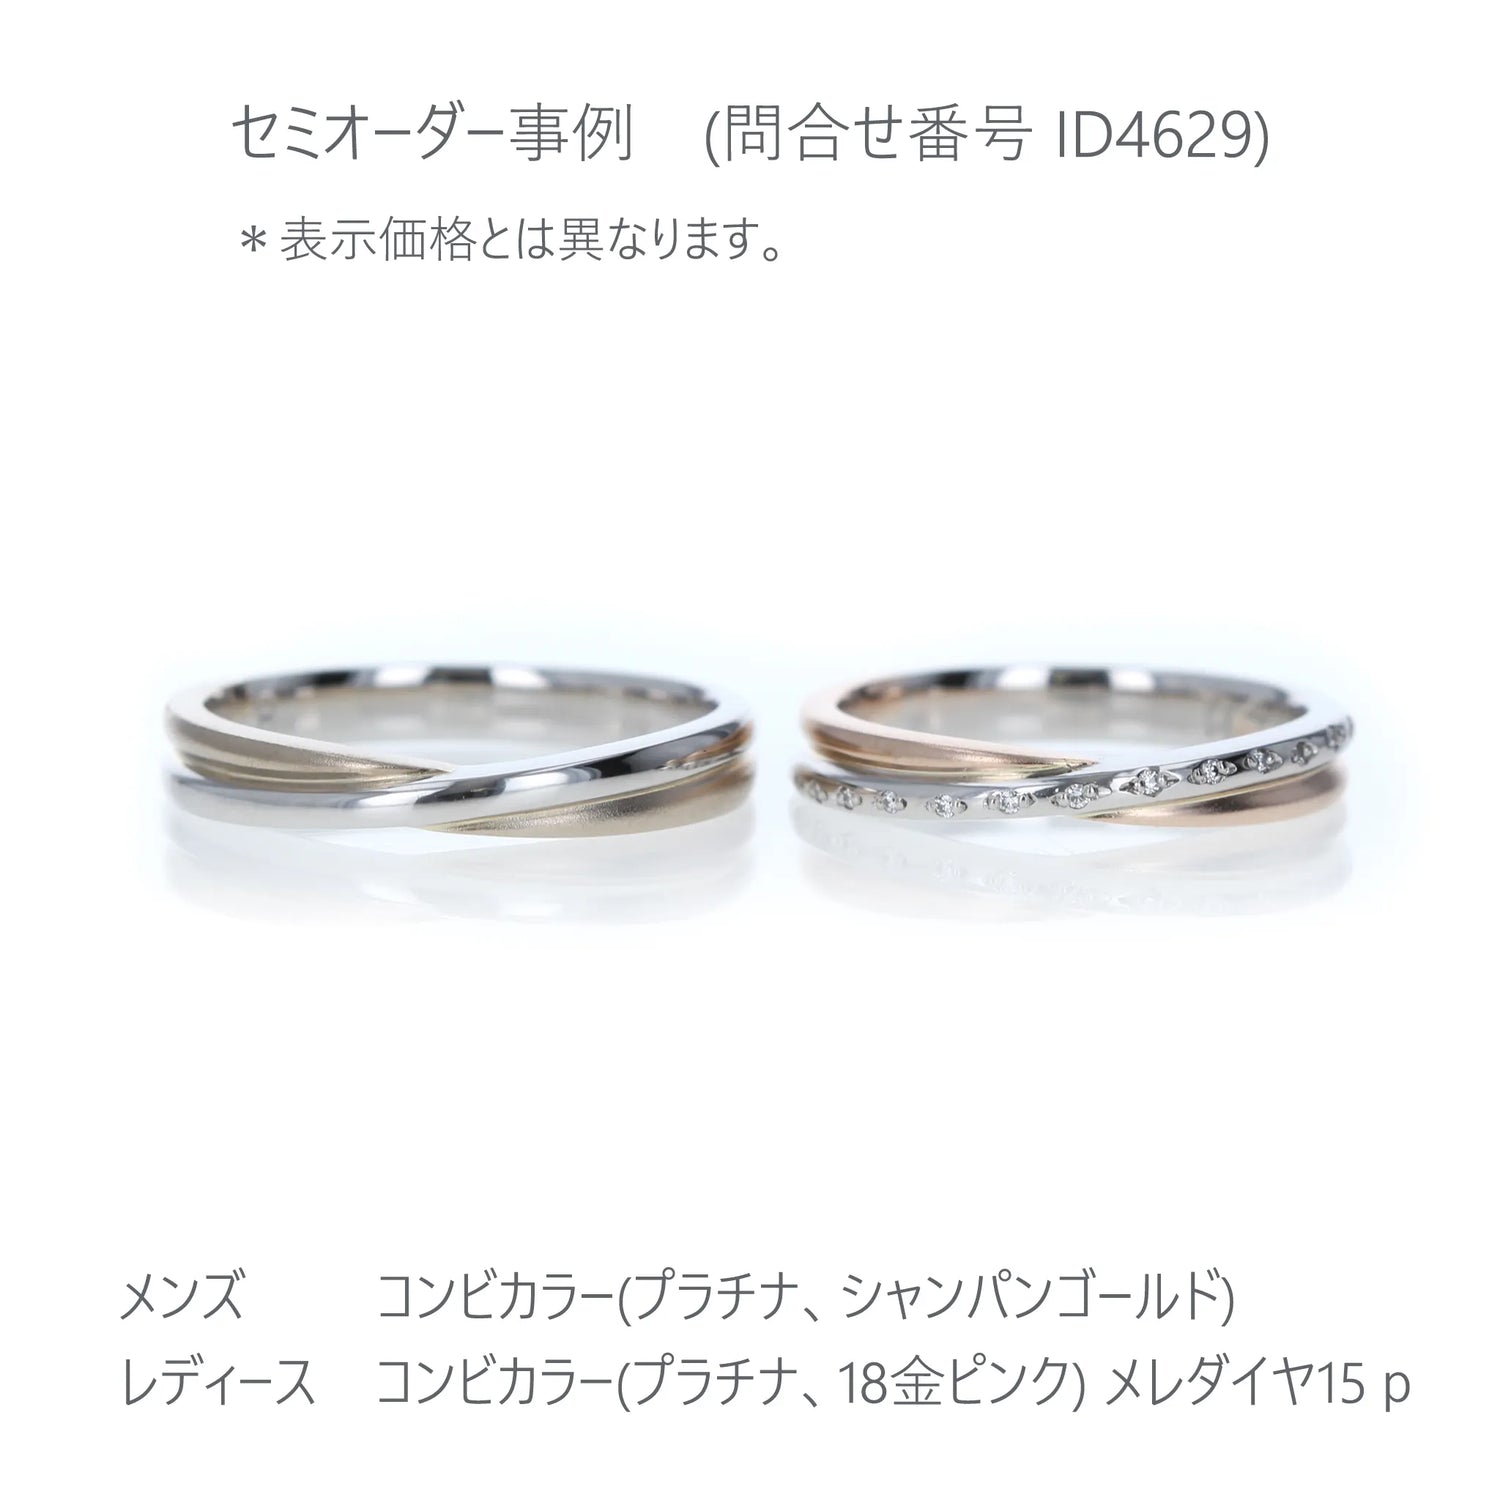 Crossing 光沢とつや消しで表現した結婚指輪 プラチナ、シャンパンゴールド、ピンクゴールド